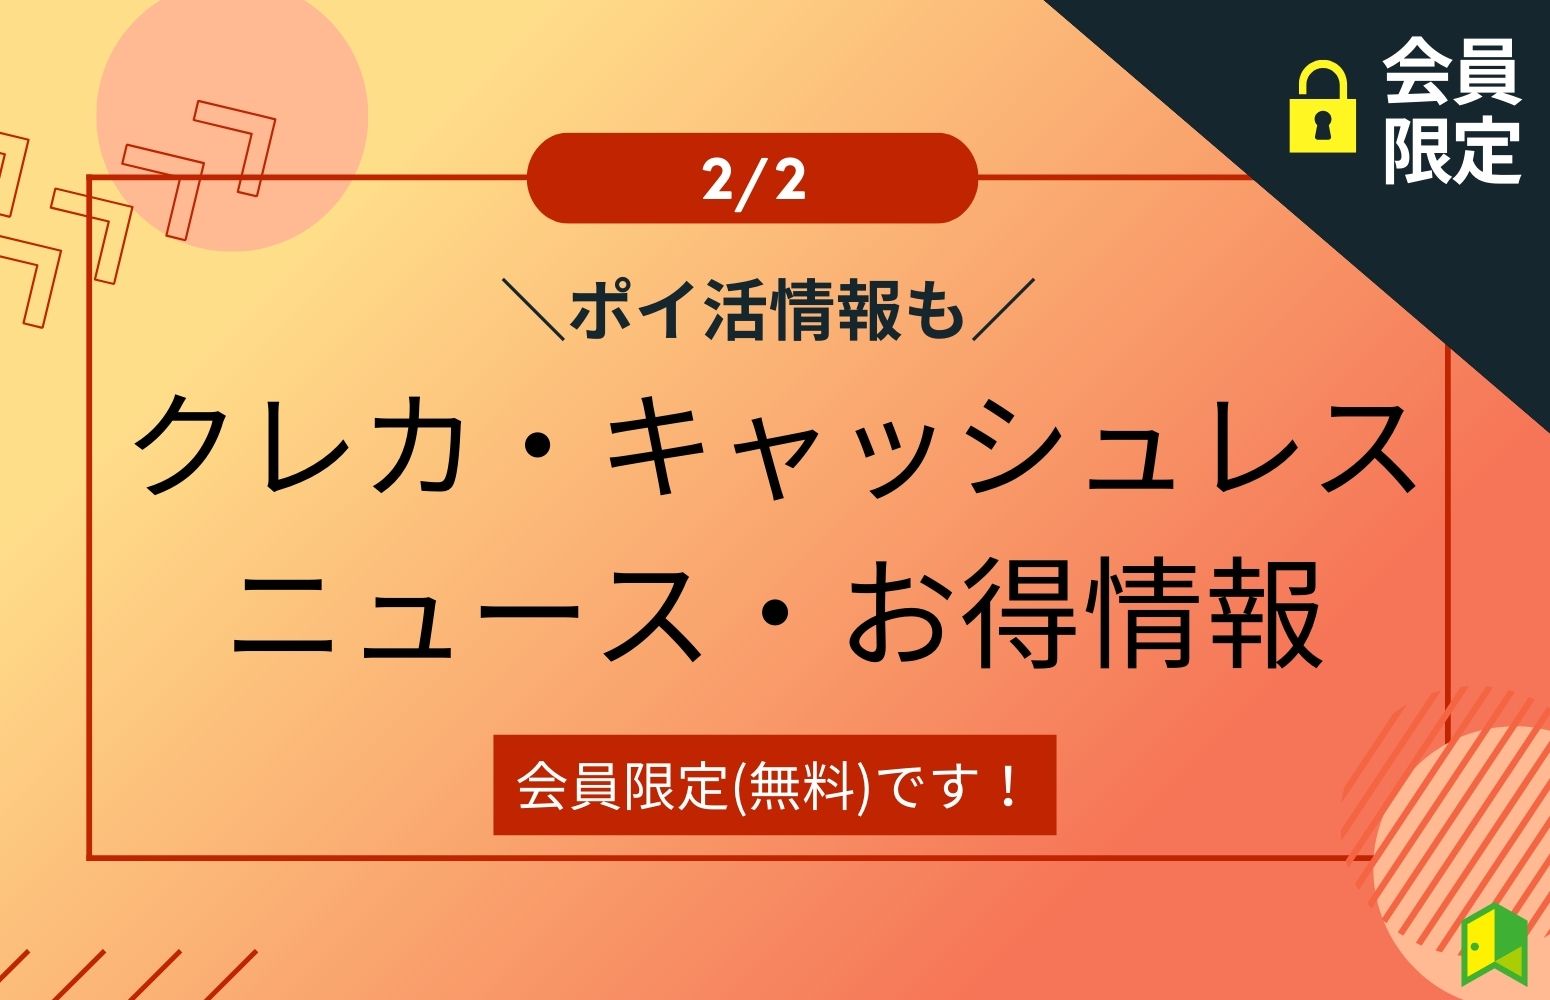 クレカ・キャッシュレスニュース・お得情報2/2